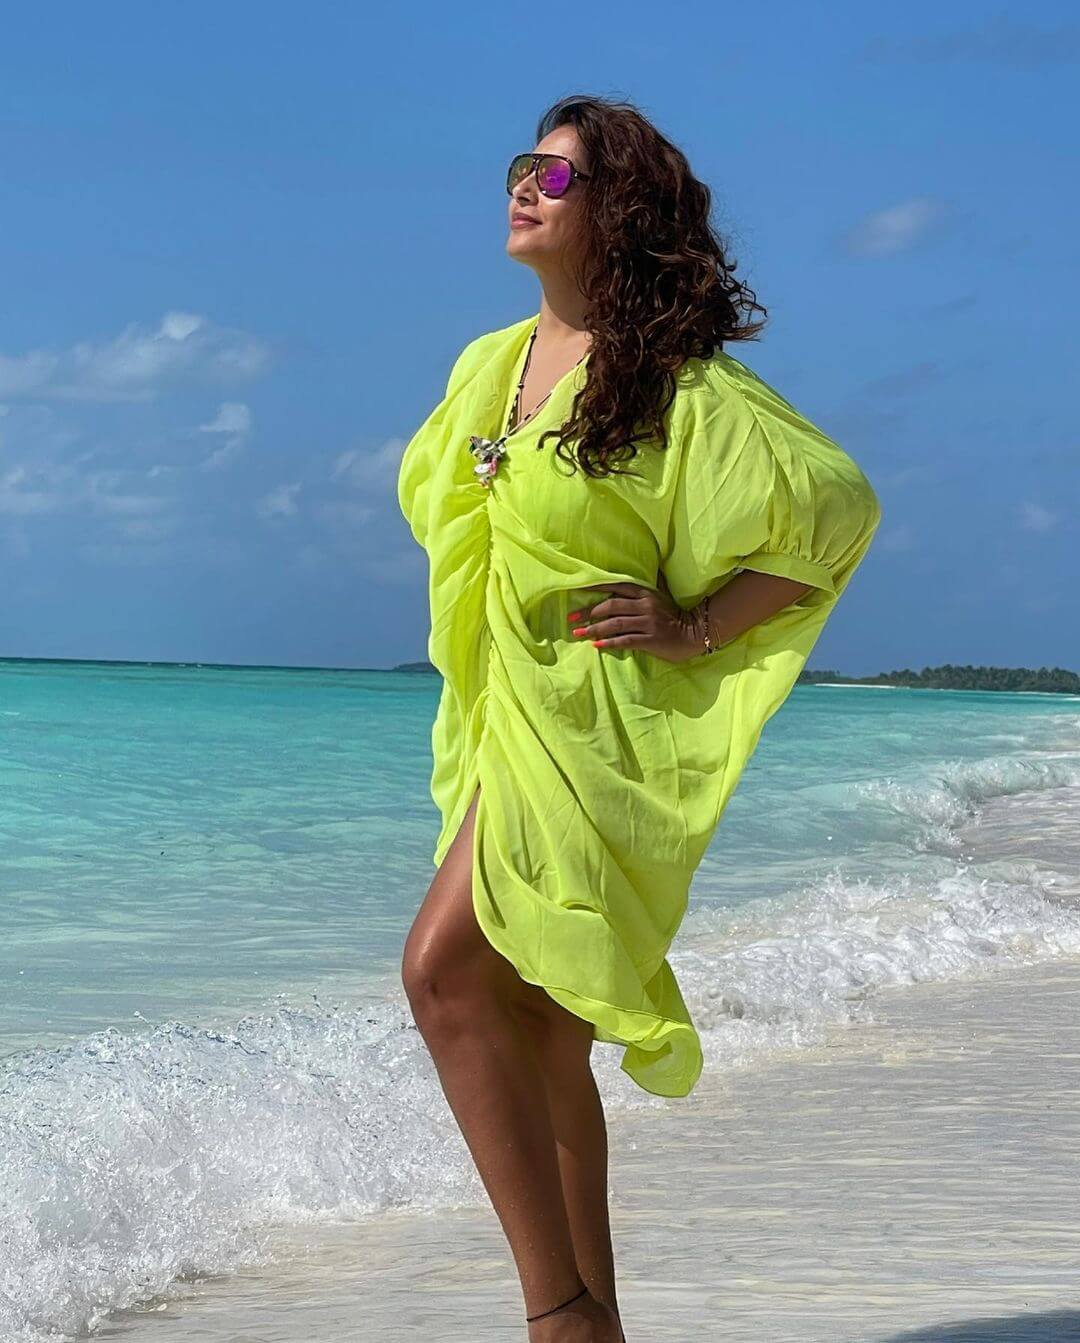 Bipasha Basu Enjoying Her Vacation In Maldives In Neon Green Kaftan Dress